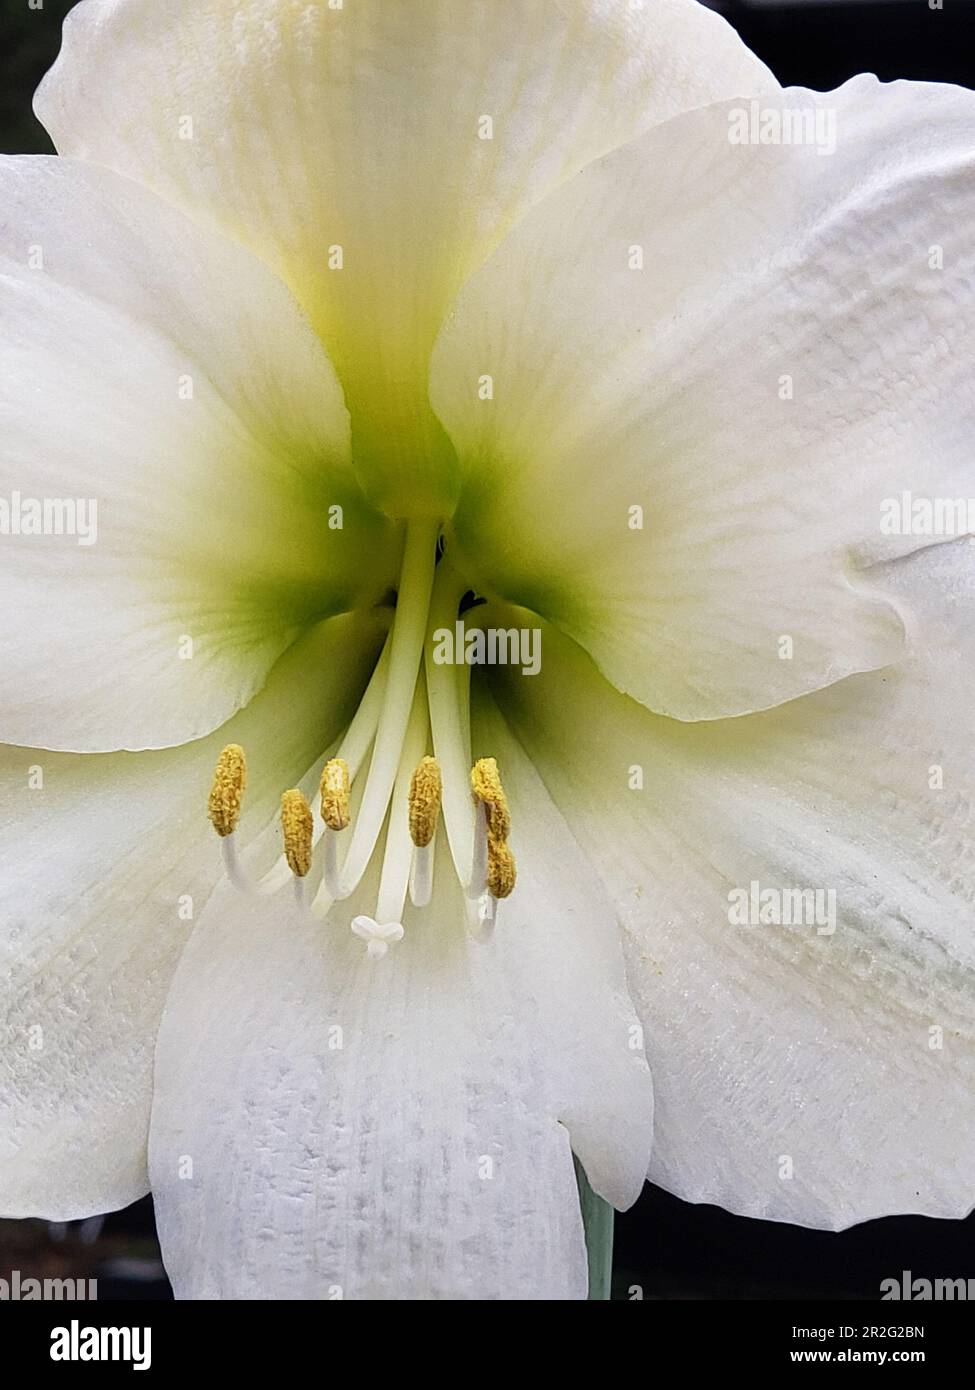 Blanc pur gros plan amaryllis fleur fleuron Banque D'Images